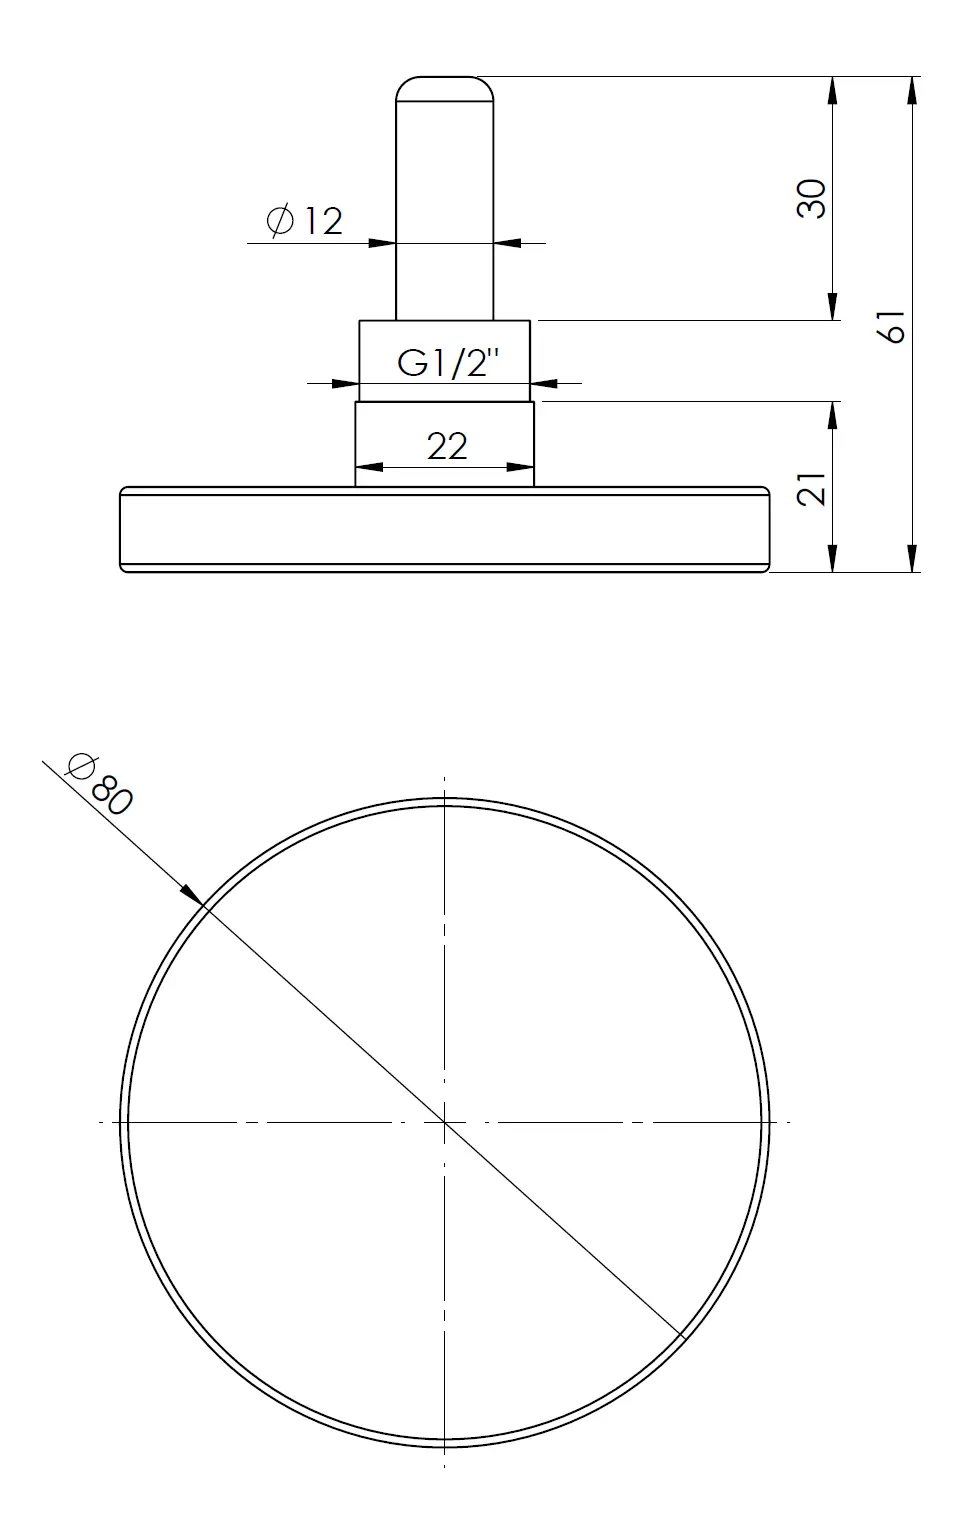 Termometr bimetaliczny BiTh 80, fi80 mm, -20÷60°C, L 40 mm, G1/2", ax, kl. 2 - budowa